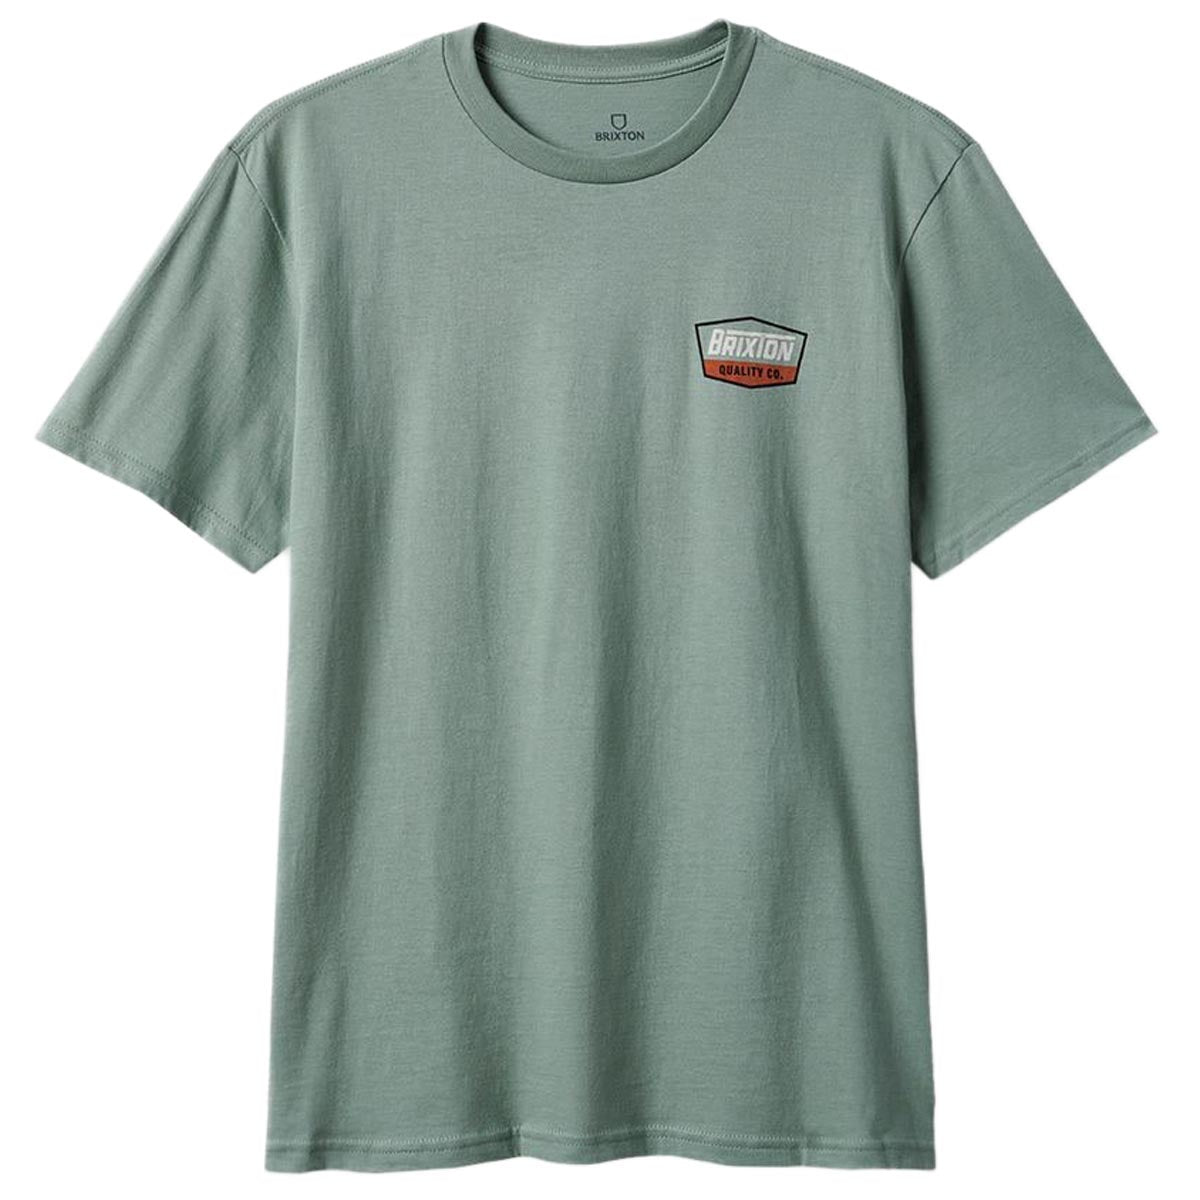 Brixton Regal T-Shirt - Chinois Green/Whitecap image 1